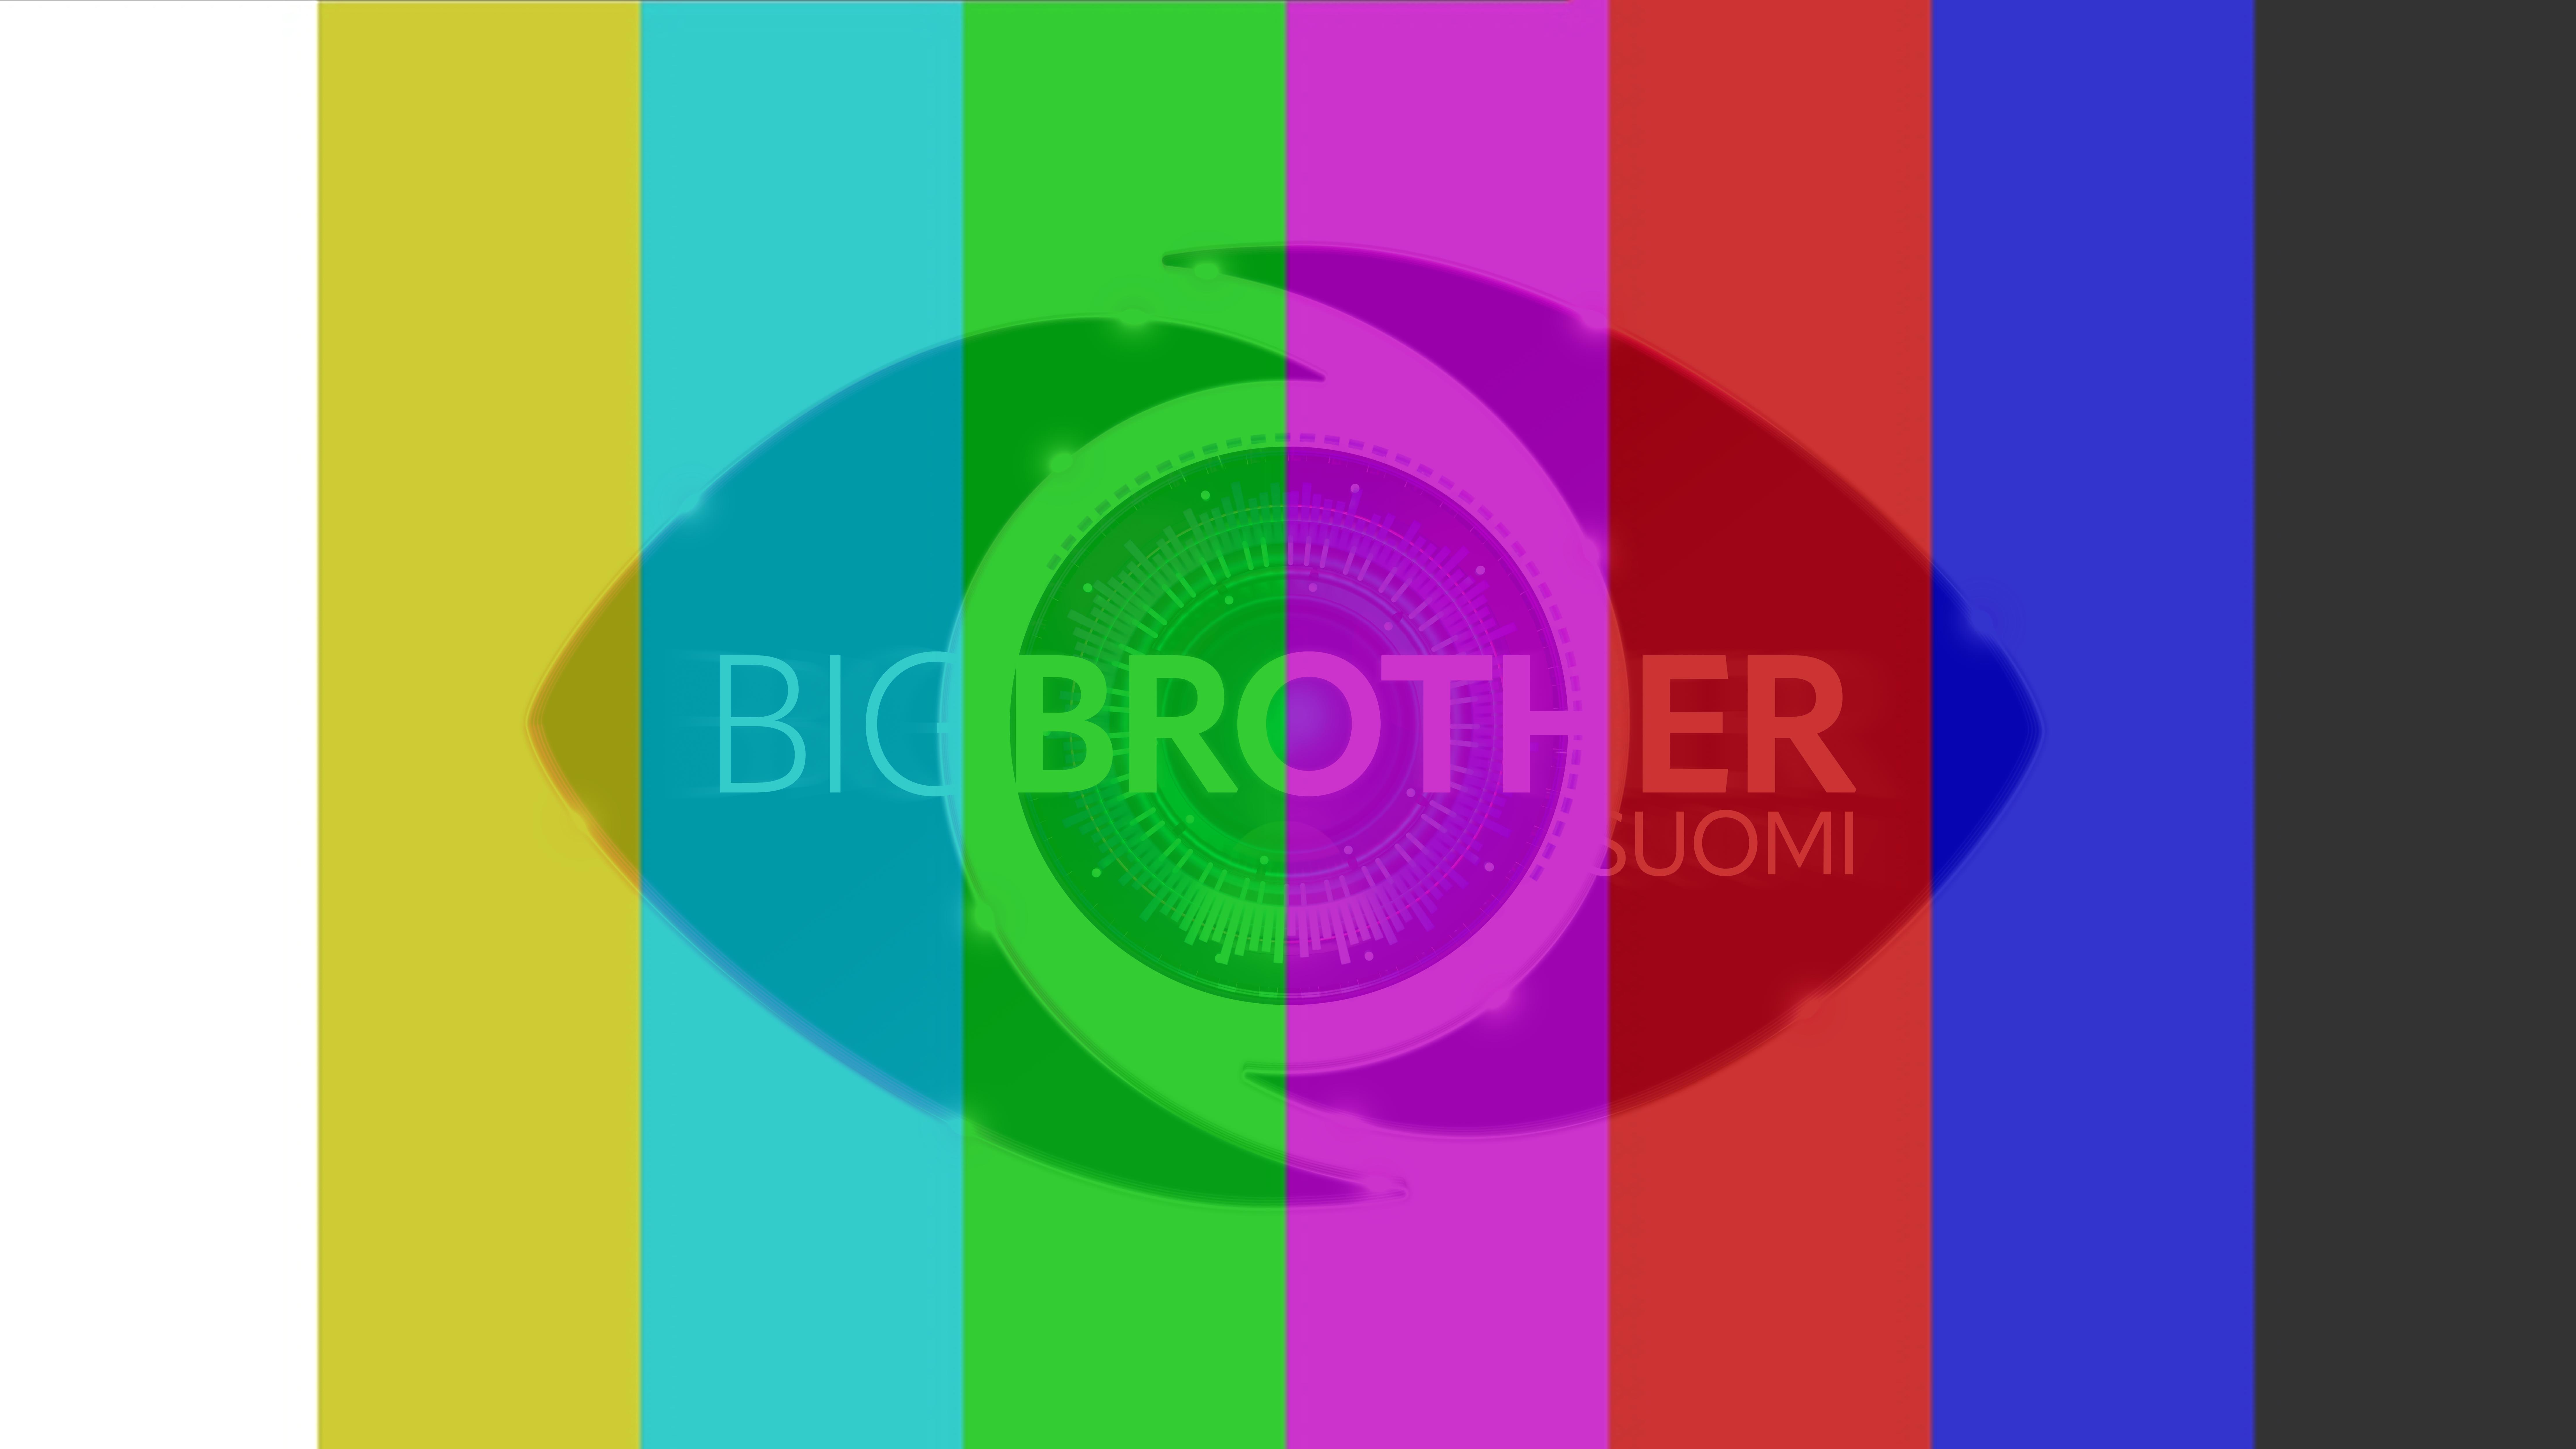 Nelonen ja MTV julkaisivat kevätohjelmistonsa, Big Brother puuttuu joukosta